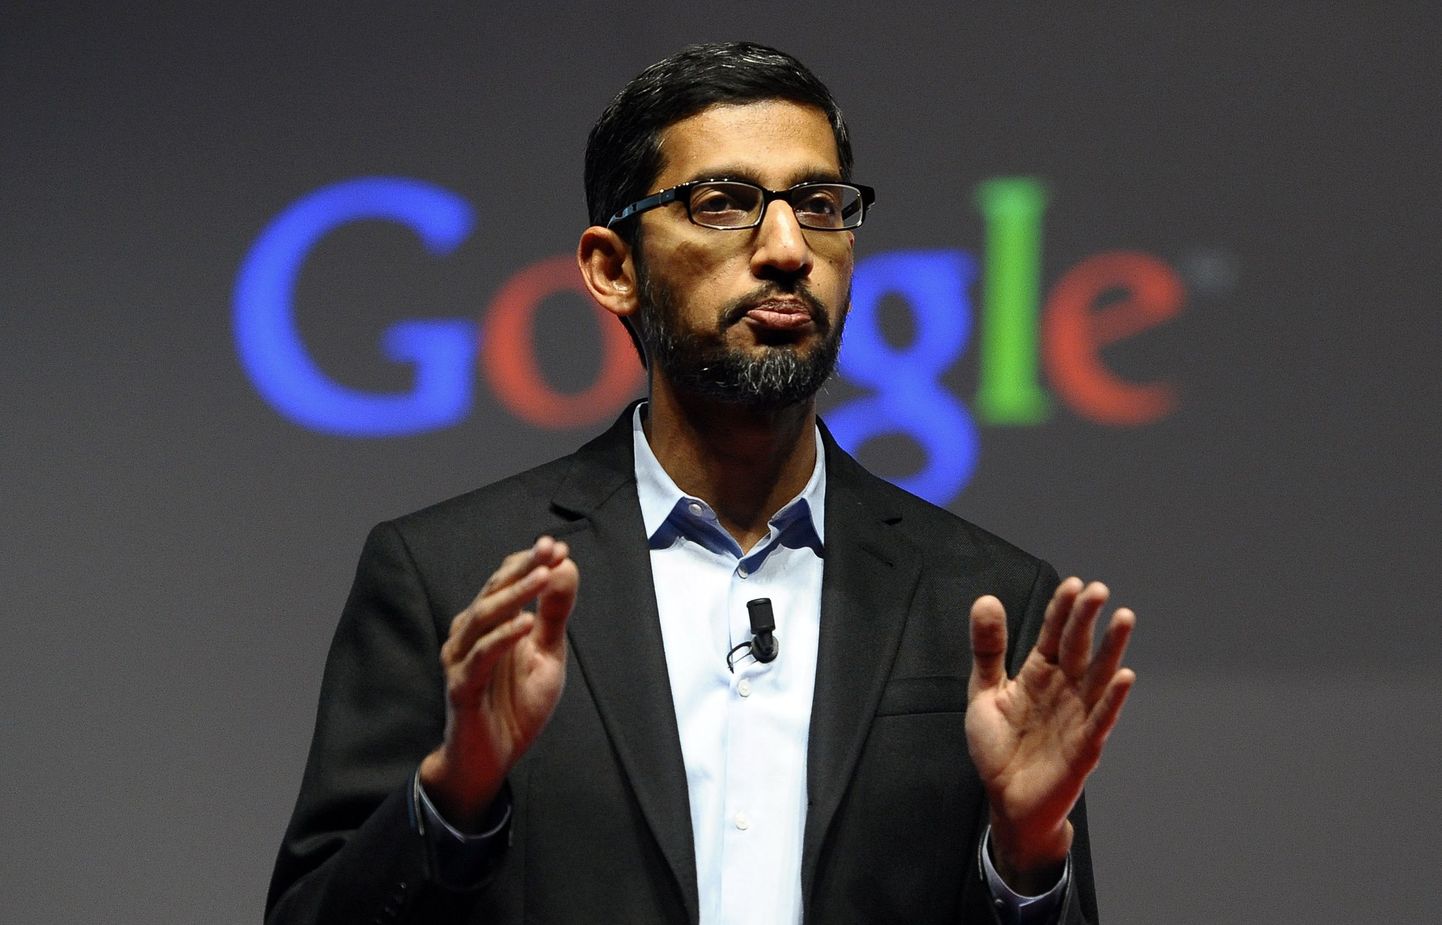 Google'i tegevjuht Sundar Pichai uus plaan on oma startup-taevas